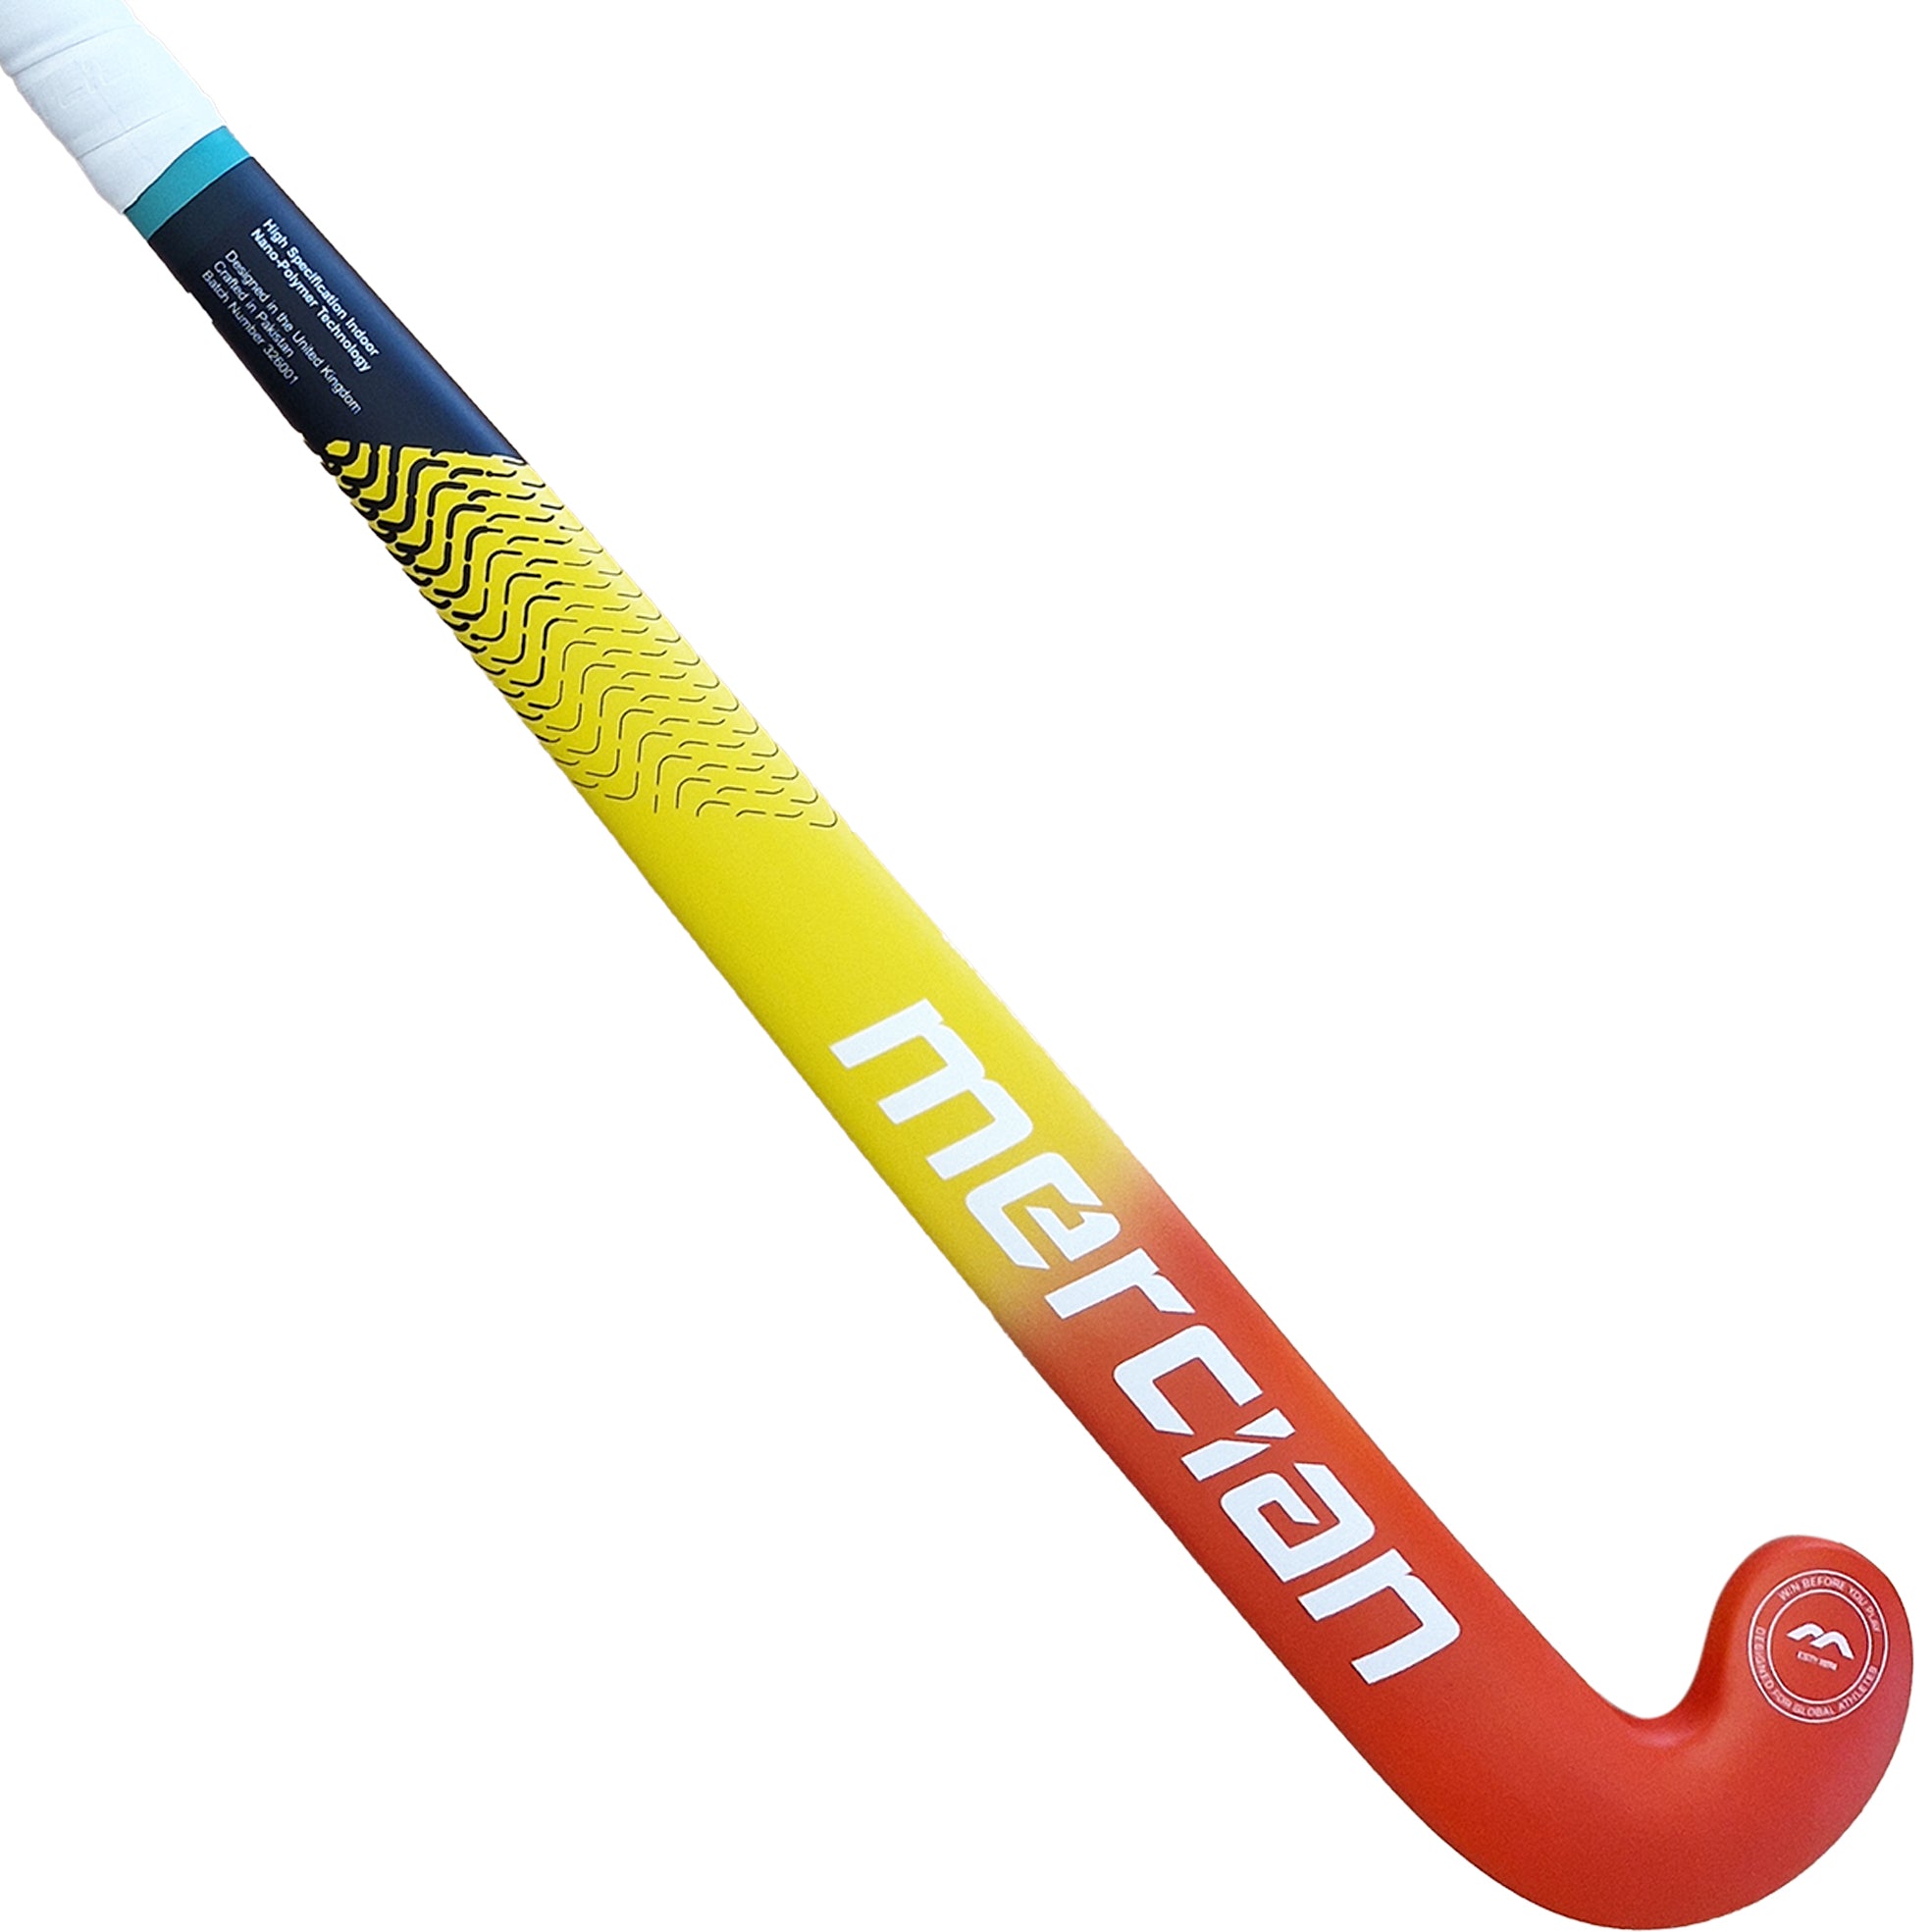 Mercian CF5i Indoor Field Hockey Stick Rear